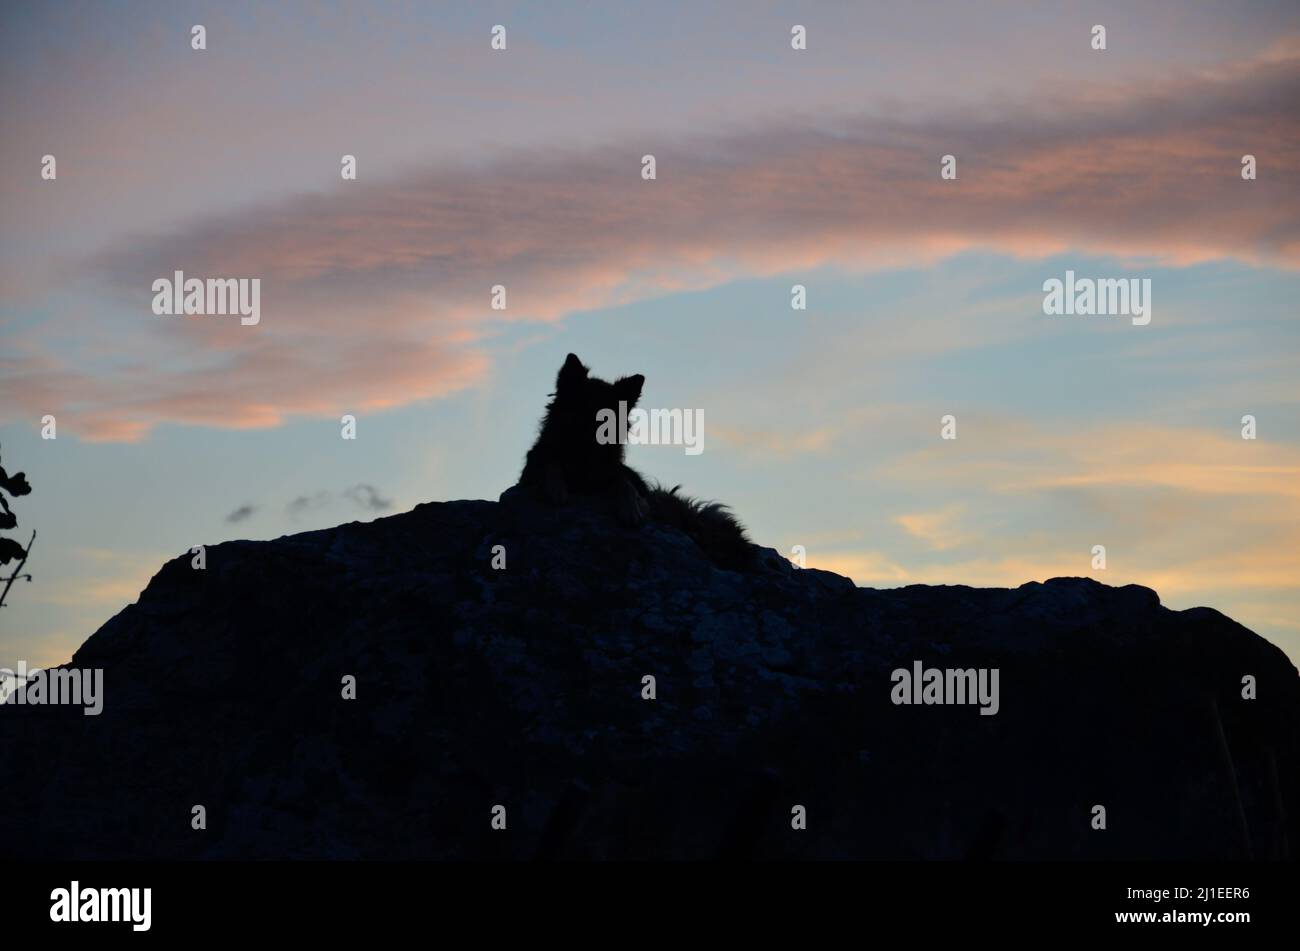 La silhouette sombre d'un chien de rue allongé sur un rocher regardant le coucher du soleil sur l'île de Sardaigne Banque D'Images